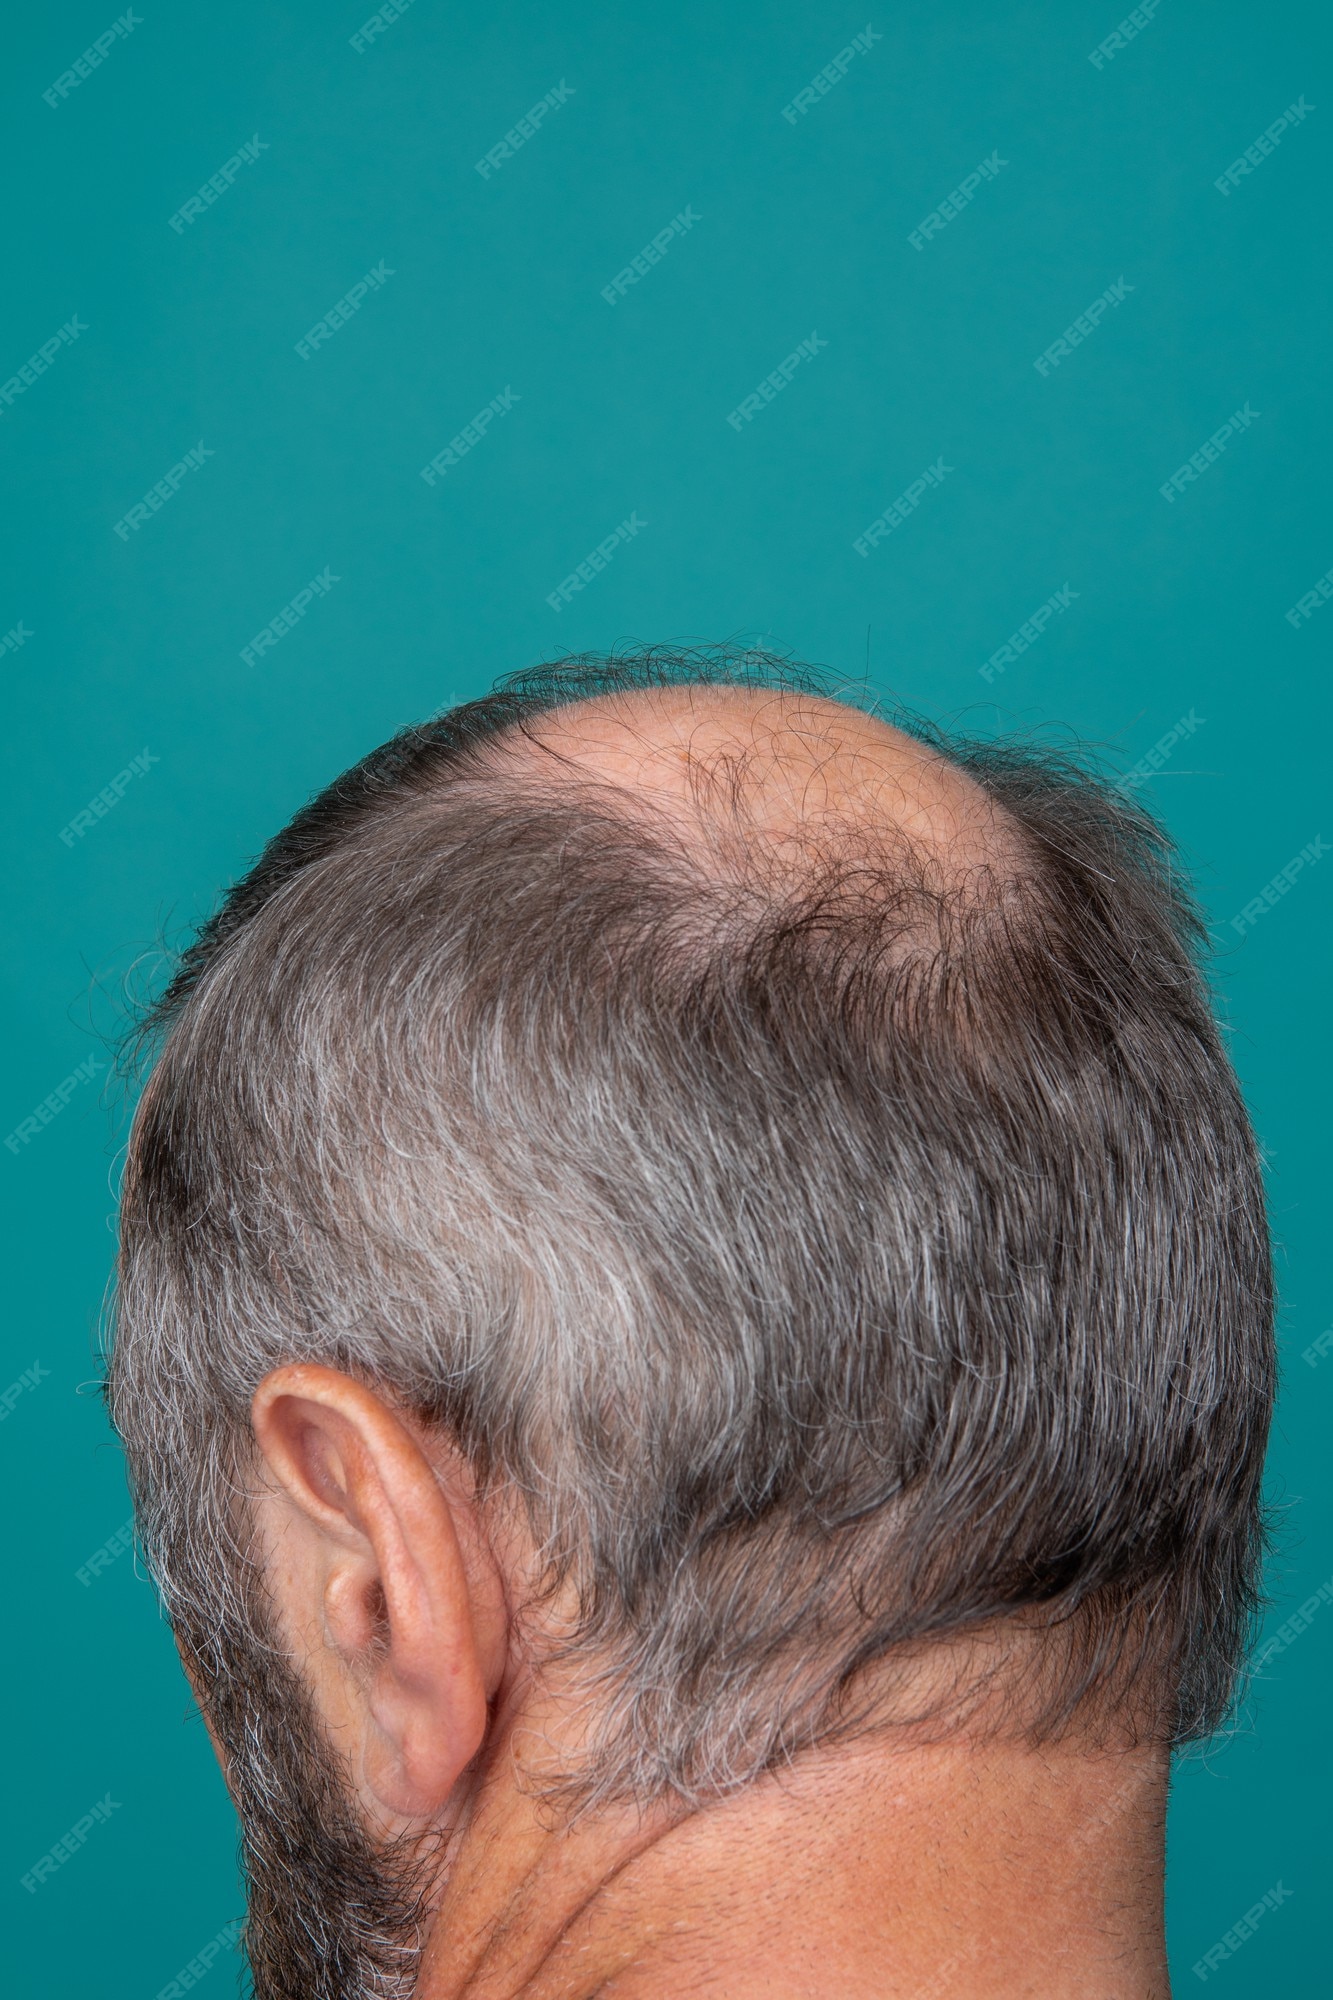 Premium Photo | A closeup of a half-bald male head, hair transplant concept  for hair loss